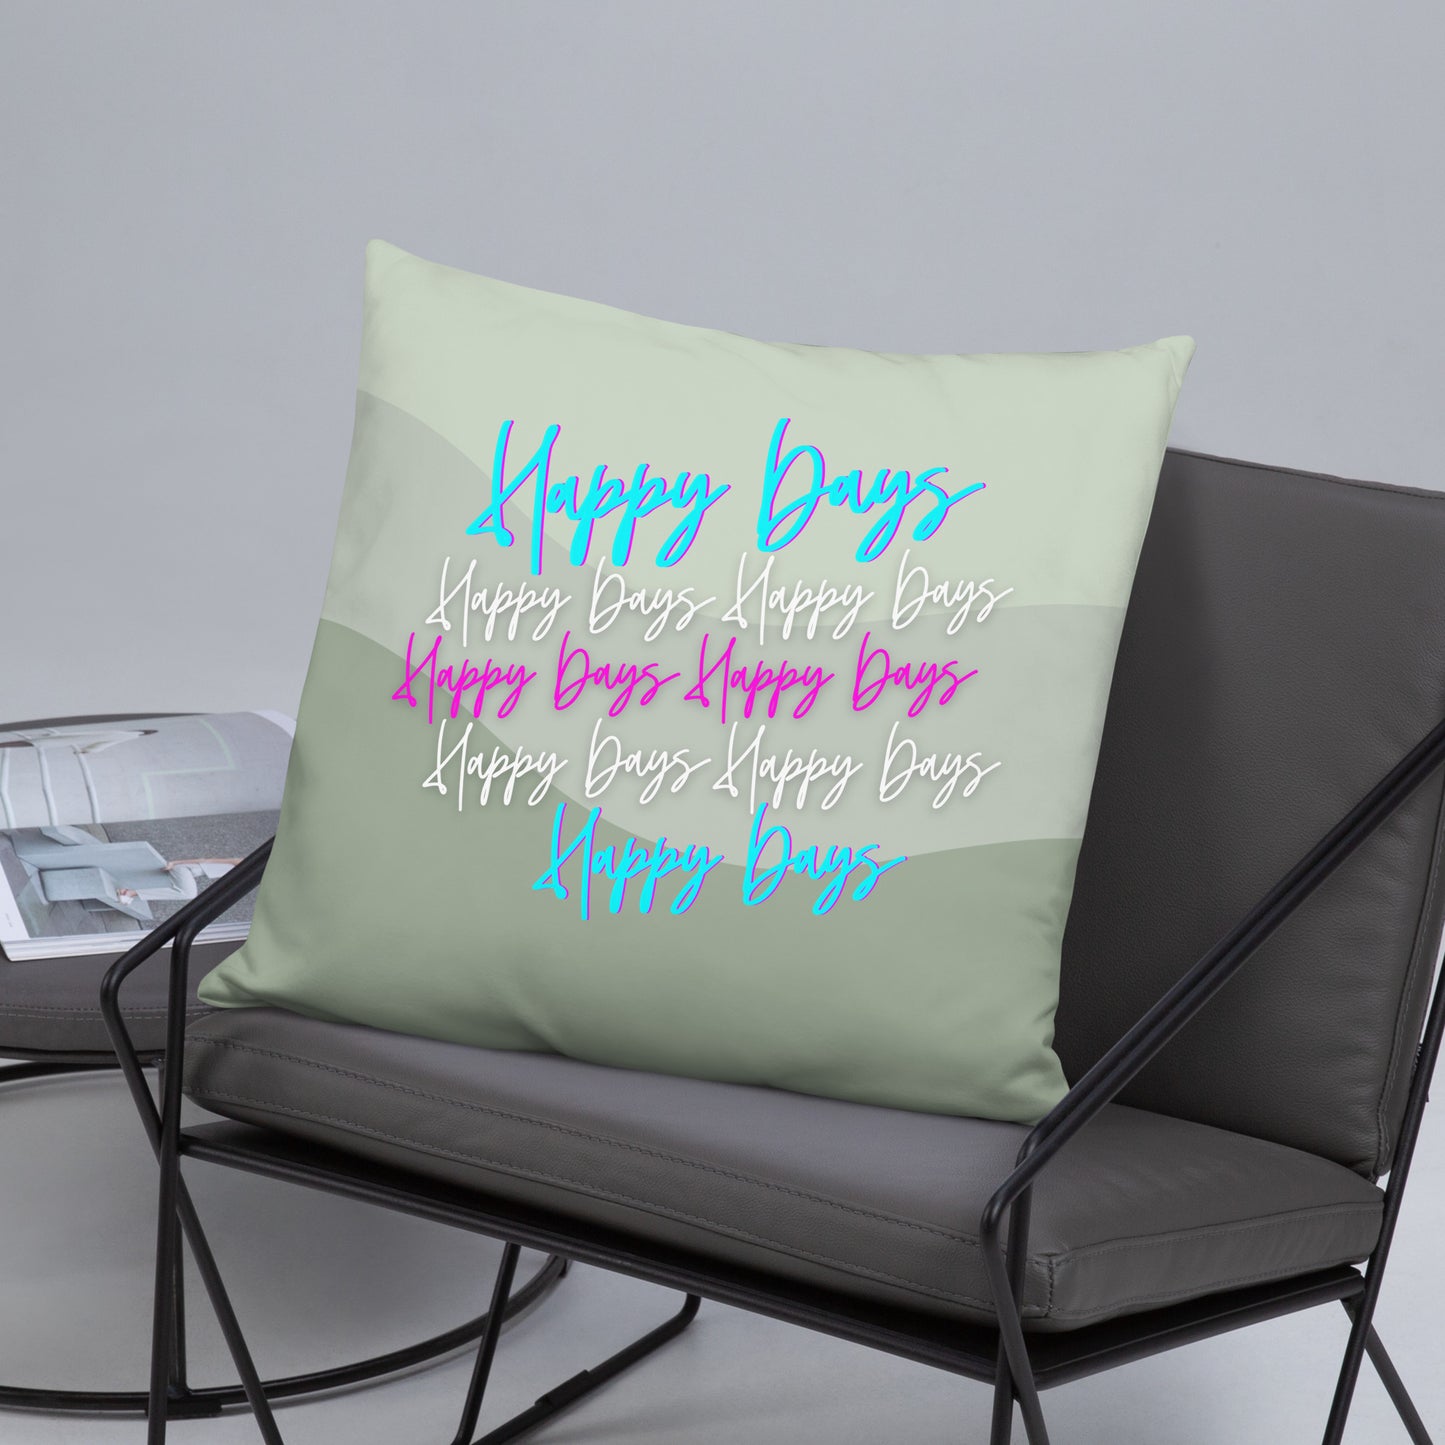 Happy Days: Cushions